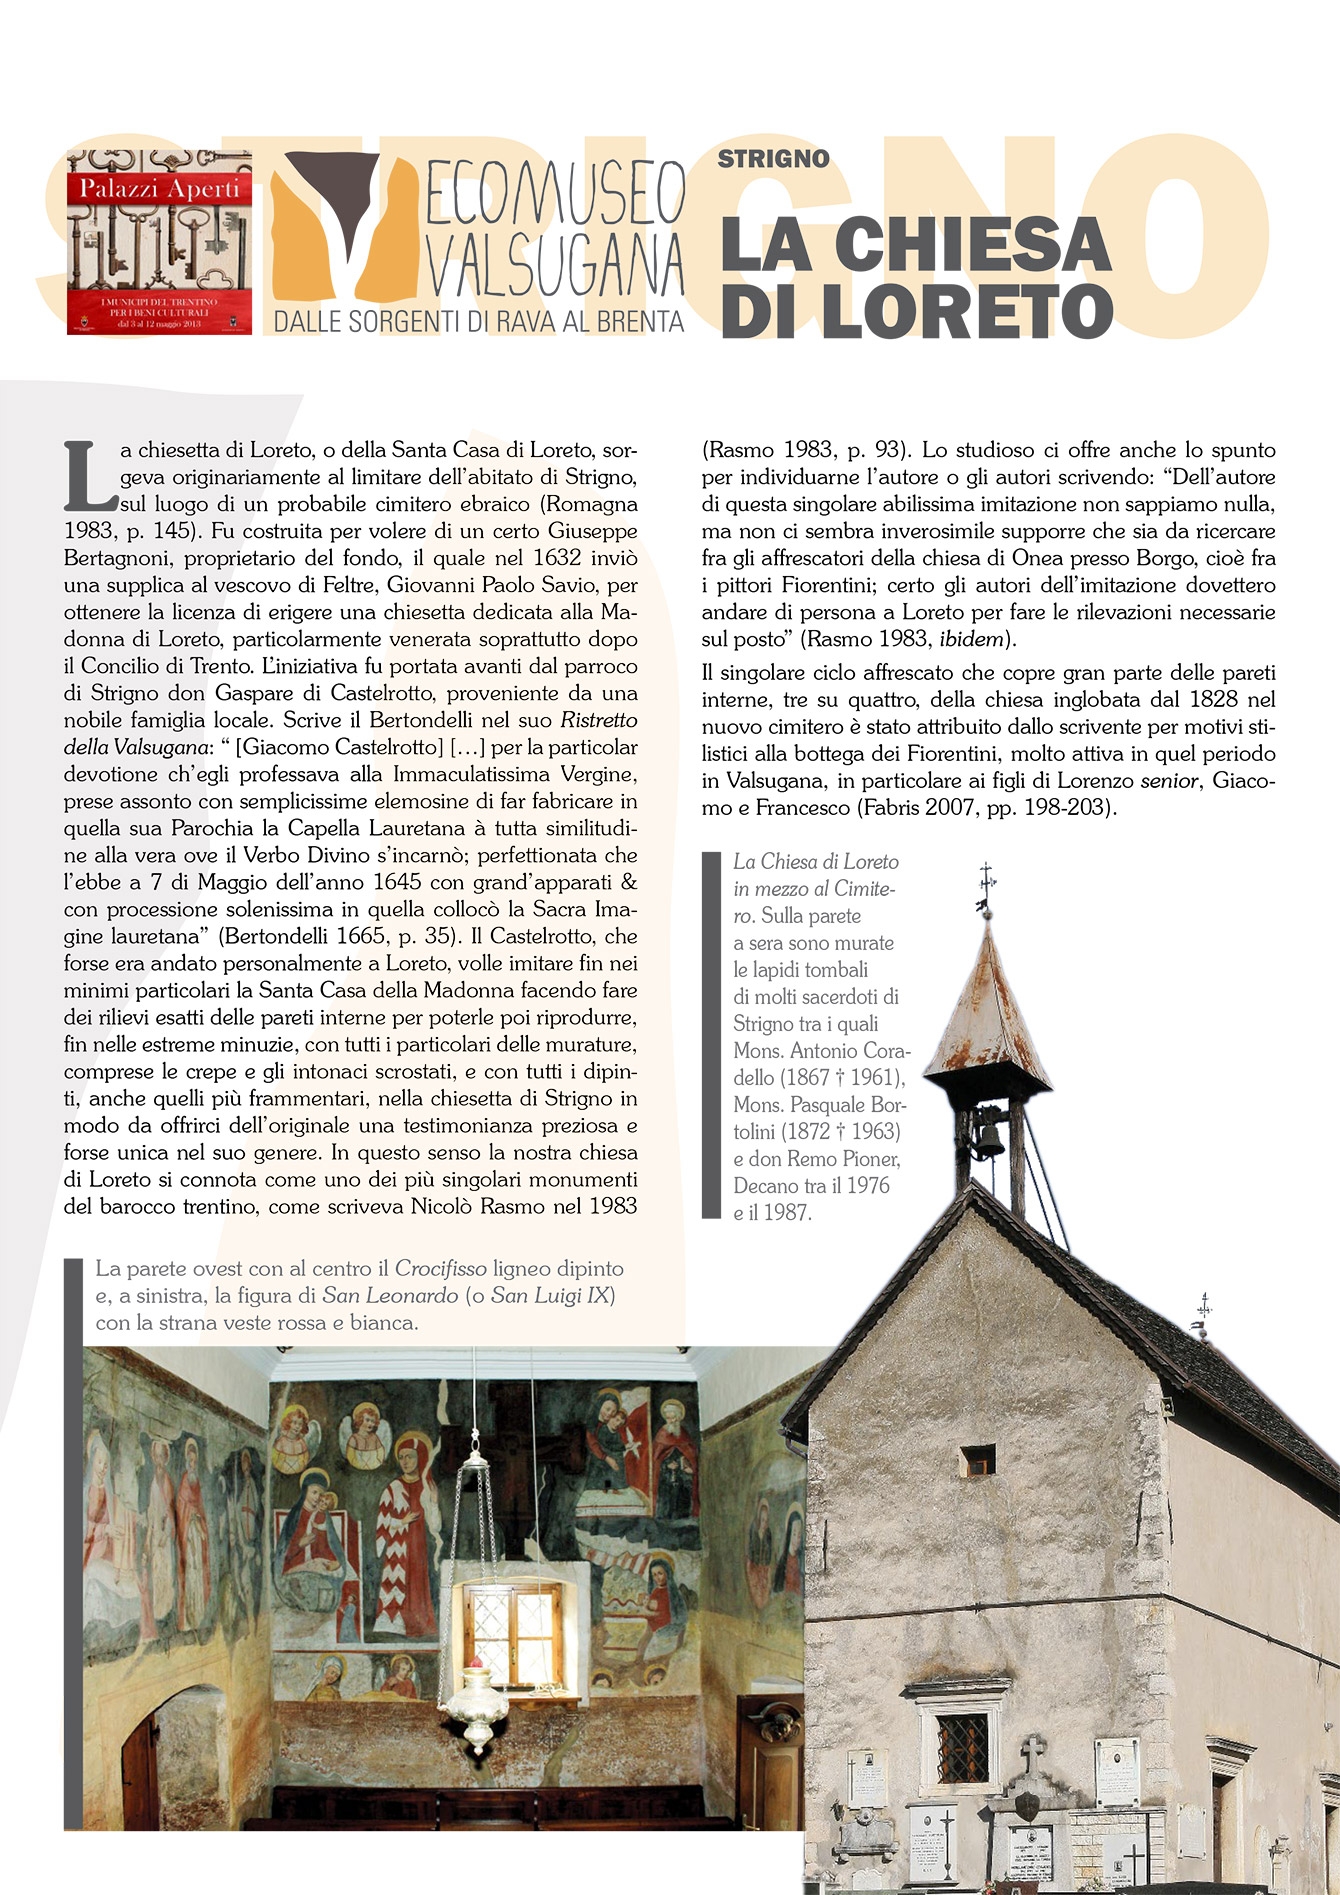 Strigno: la chiesa di Loreto